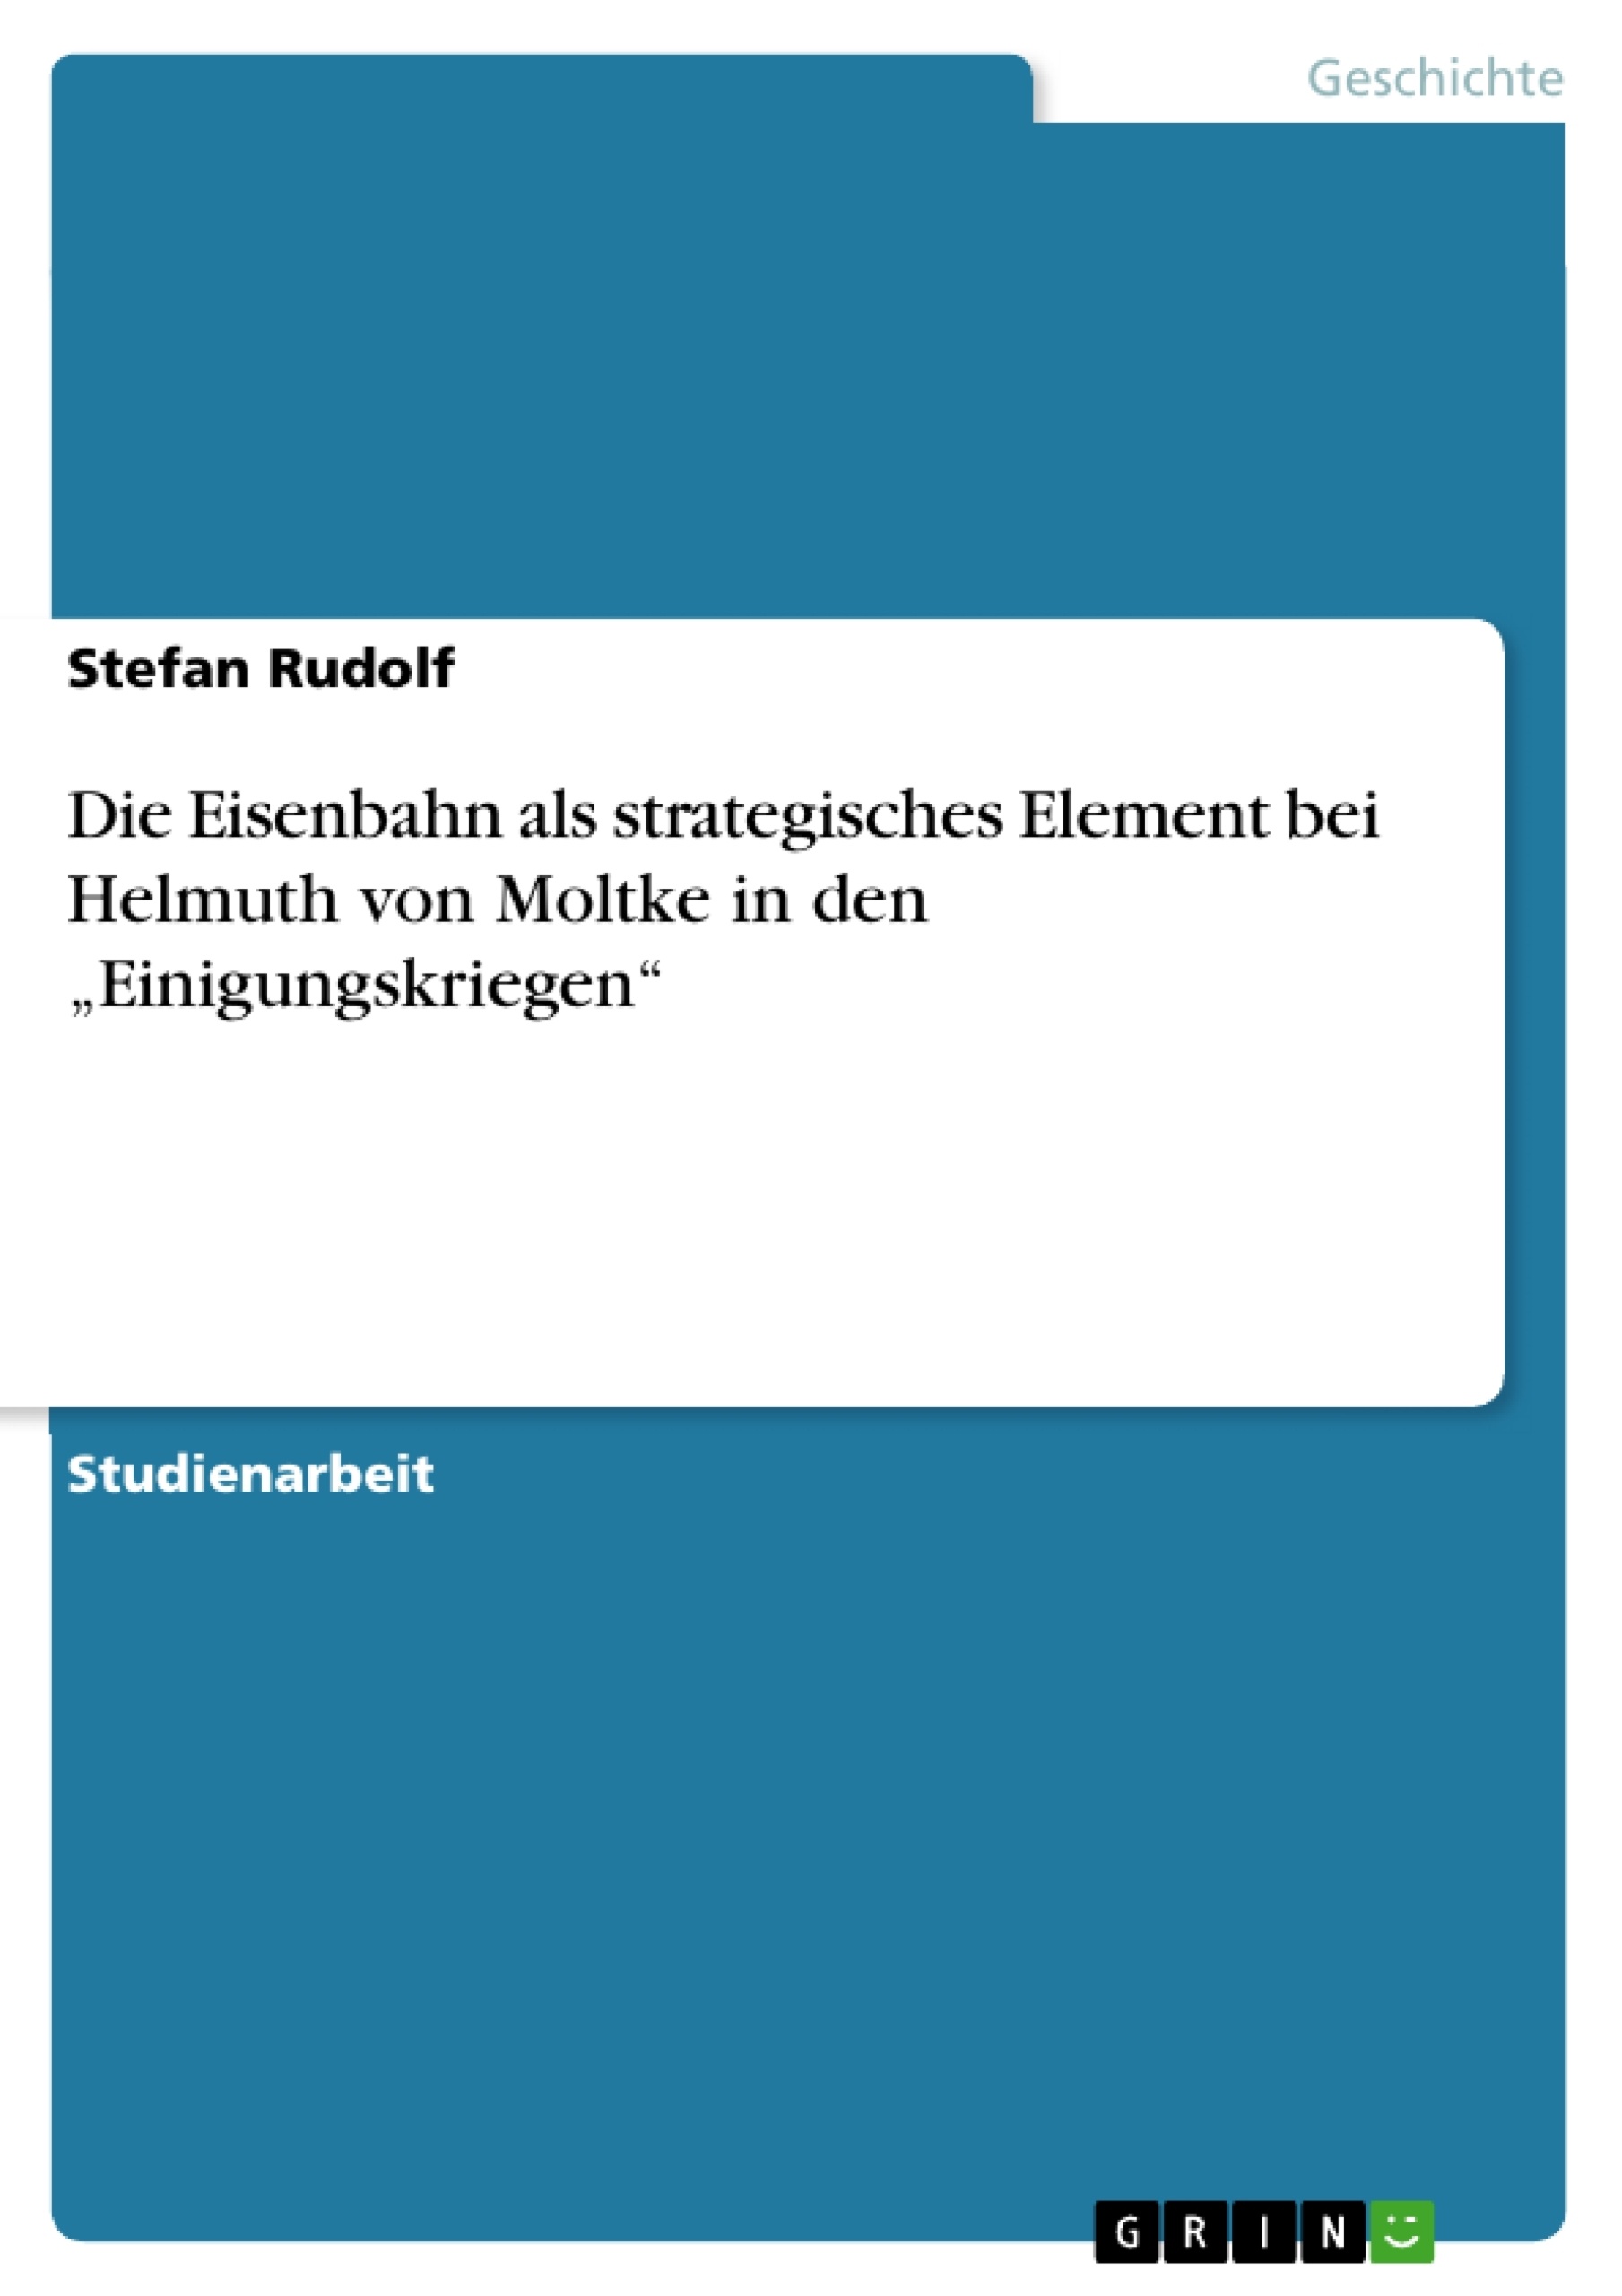 Titre: Die Eisenbahn als strategisches Element bei Helmuth von Moltke in den „Einigungskriegen“